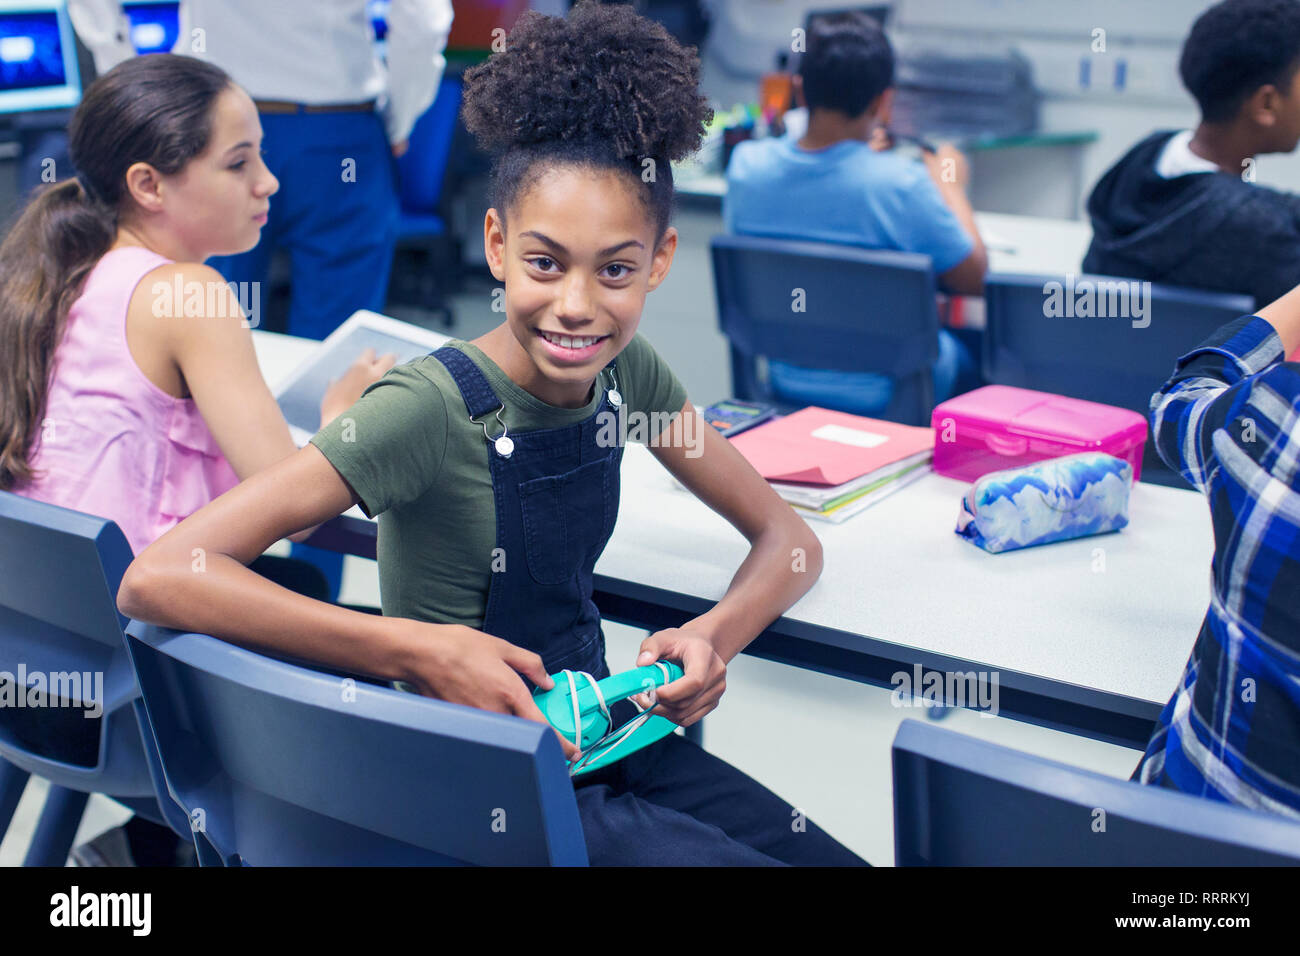 Porträt Lächeln, zuversichtlich Junior high school girl Student mit Kopfhörern am Schreibtisch im Klassenzimmer Stockfoto